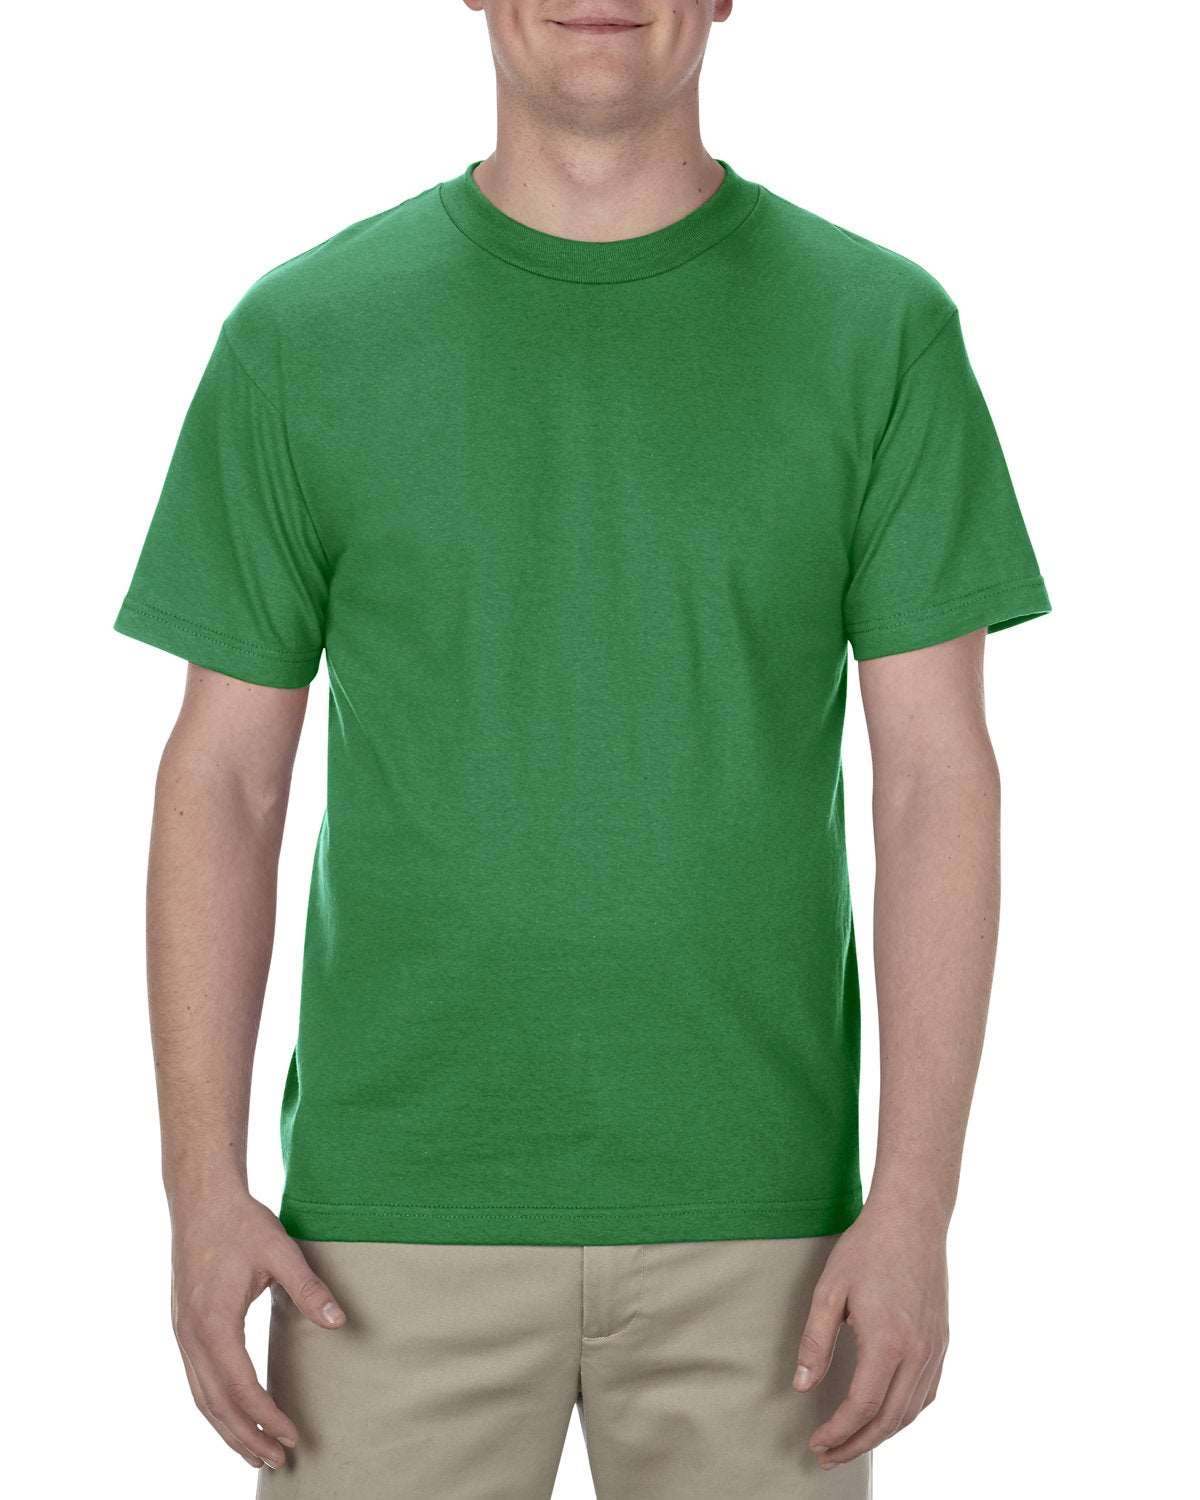 Alstyle Adult 6.0oz 100% Cotton T-Shirt-Plus Sizes